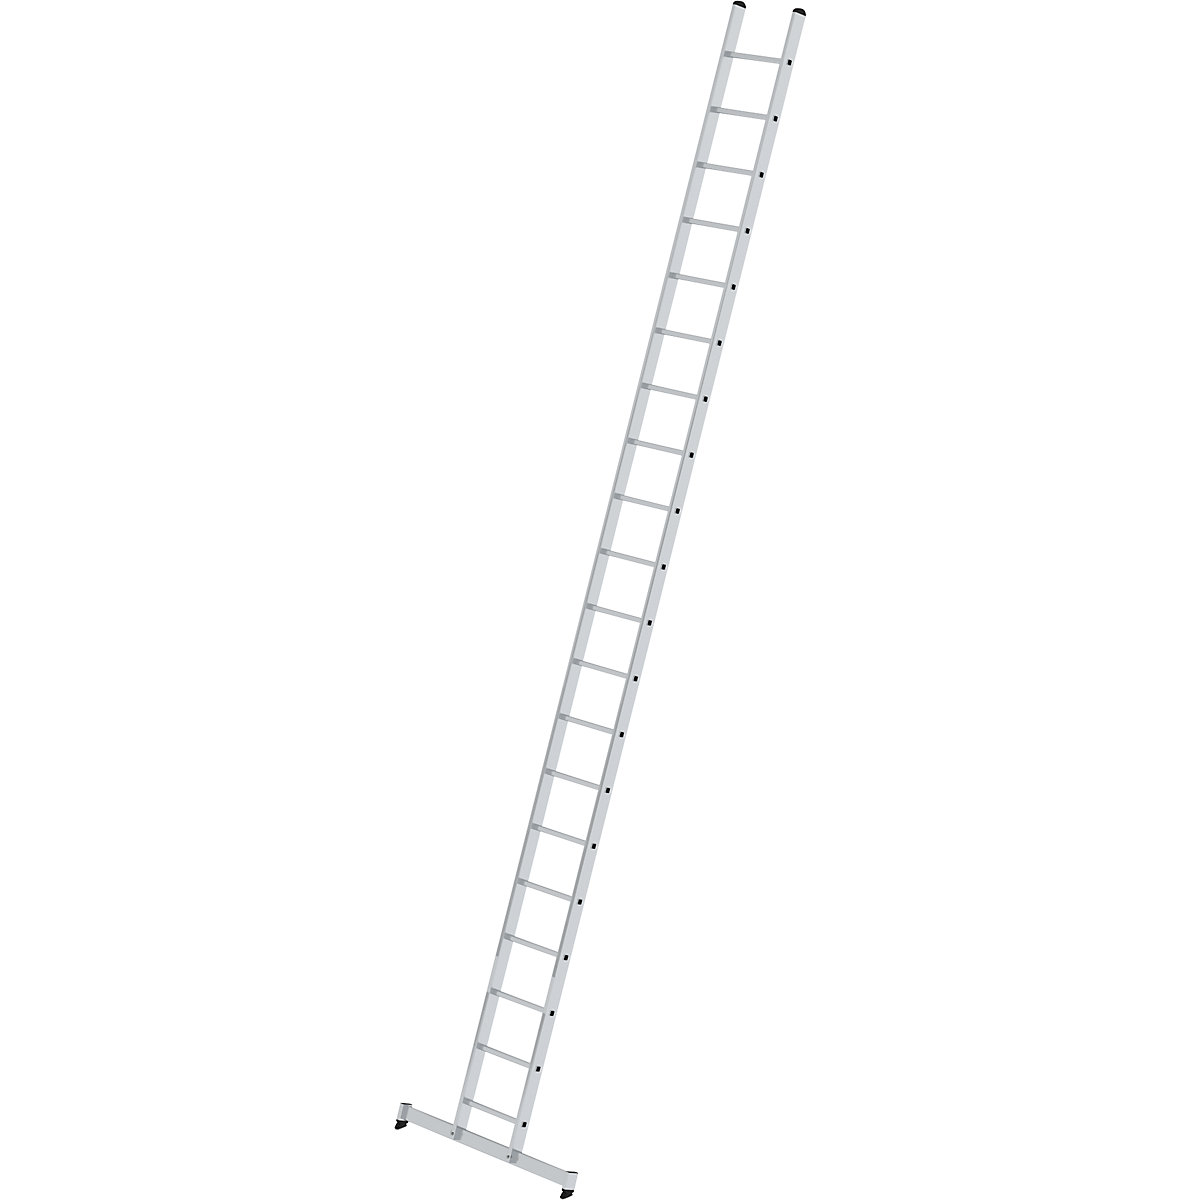 Príložný rebrík s priečkami – MUNK, profesionálne vyhotovenie, šírka 420 mm, 20 priečok, s priečnikom nivello®-4